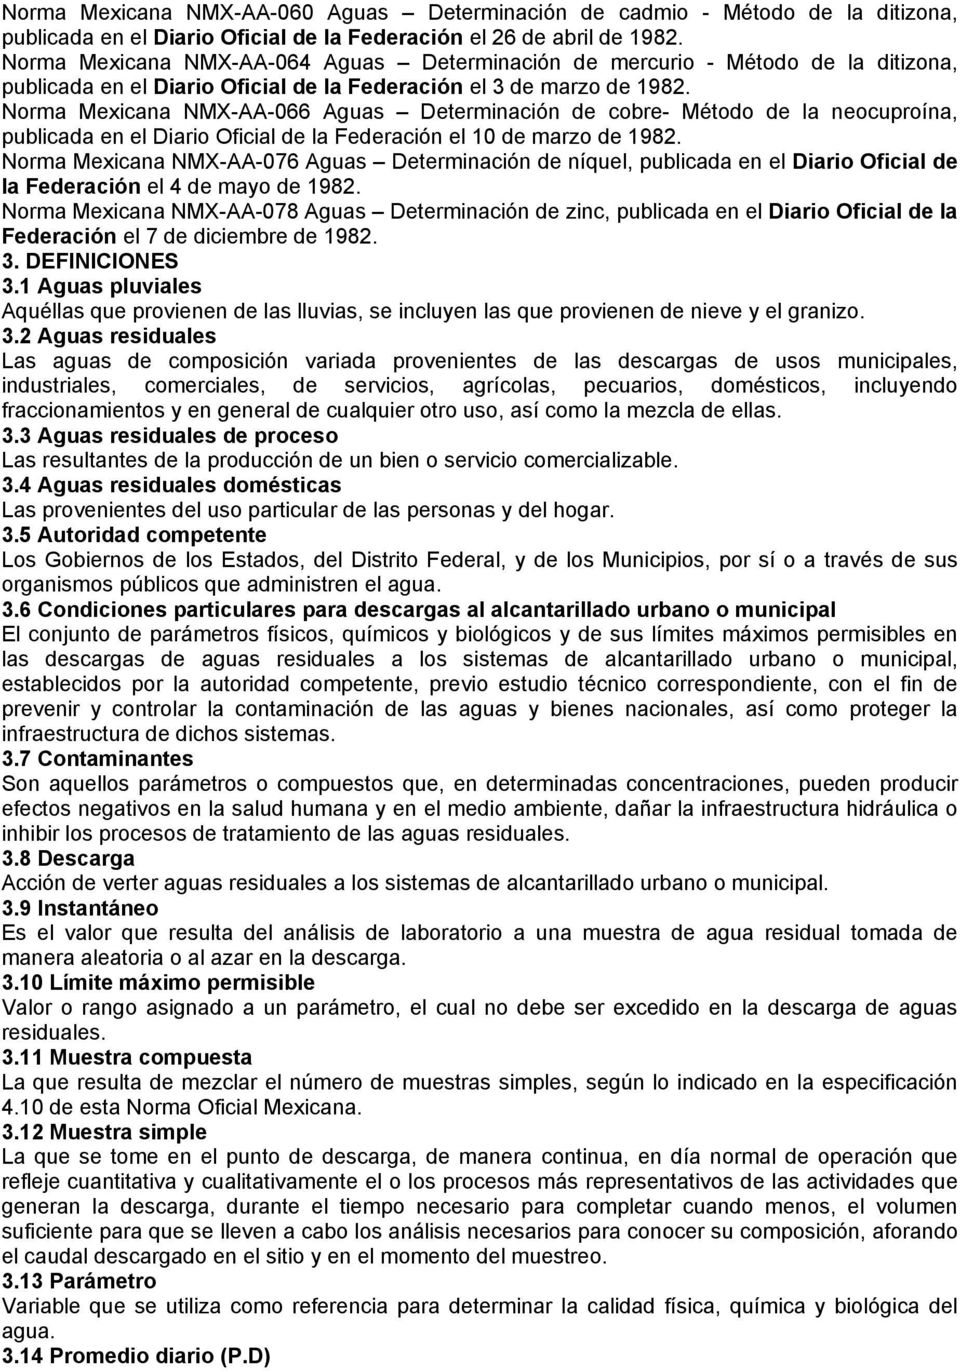 Norma Mexicana NMX-AA-066 Aguas Determinación de cobre- Método de la neocuproína, publicada en el Diario Oficial de la Federación el 10 de marzo de 1982.